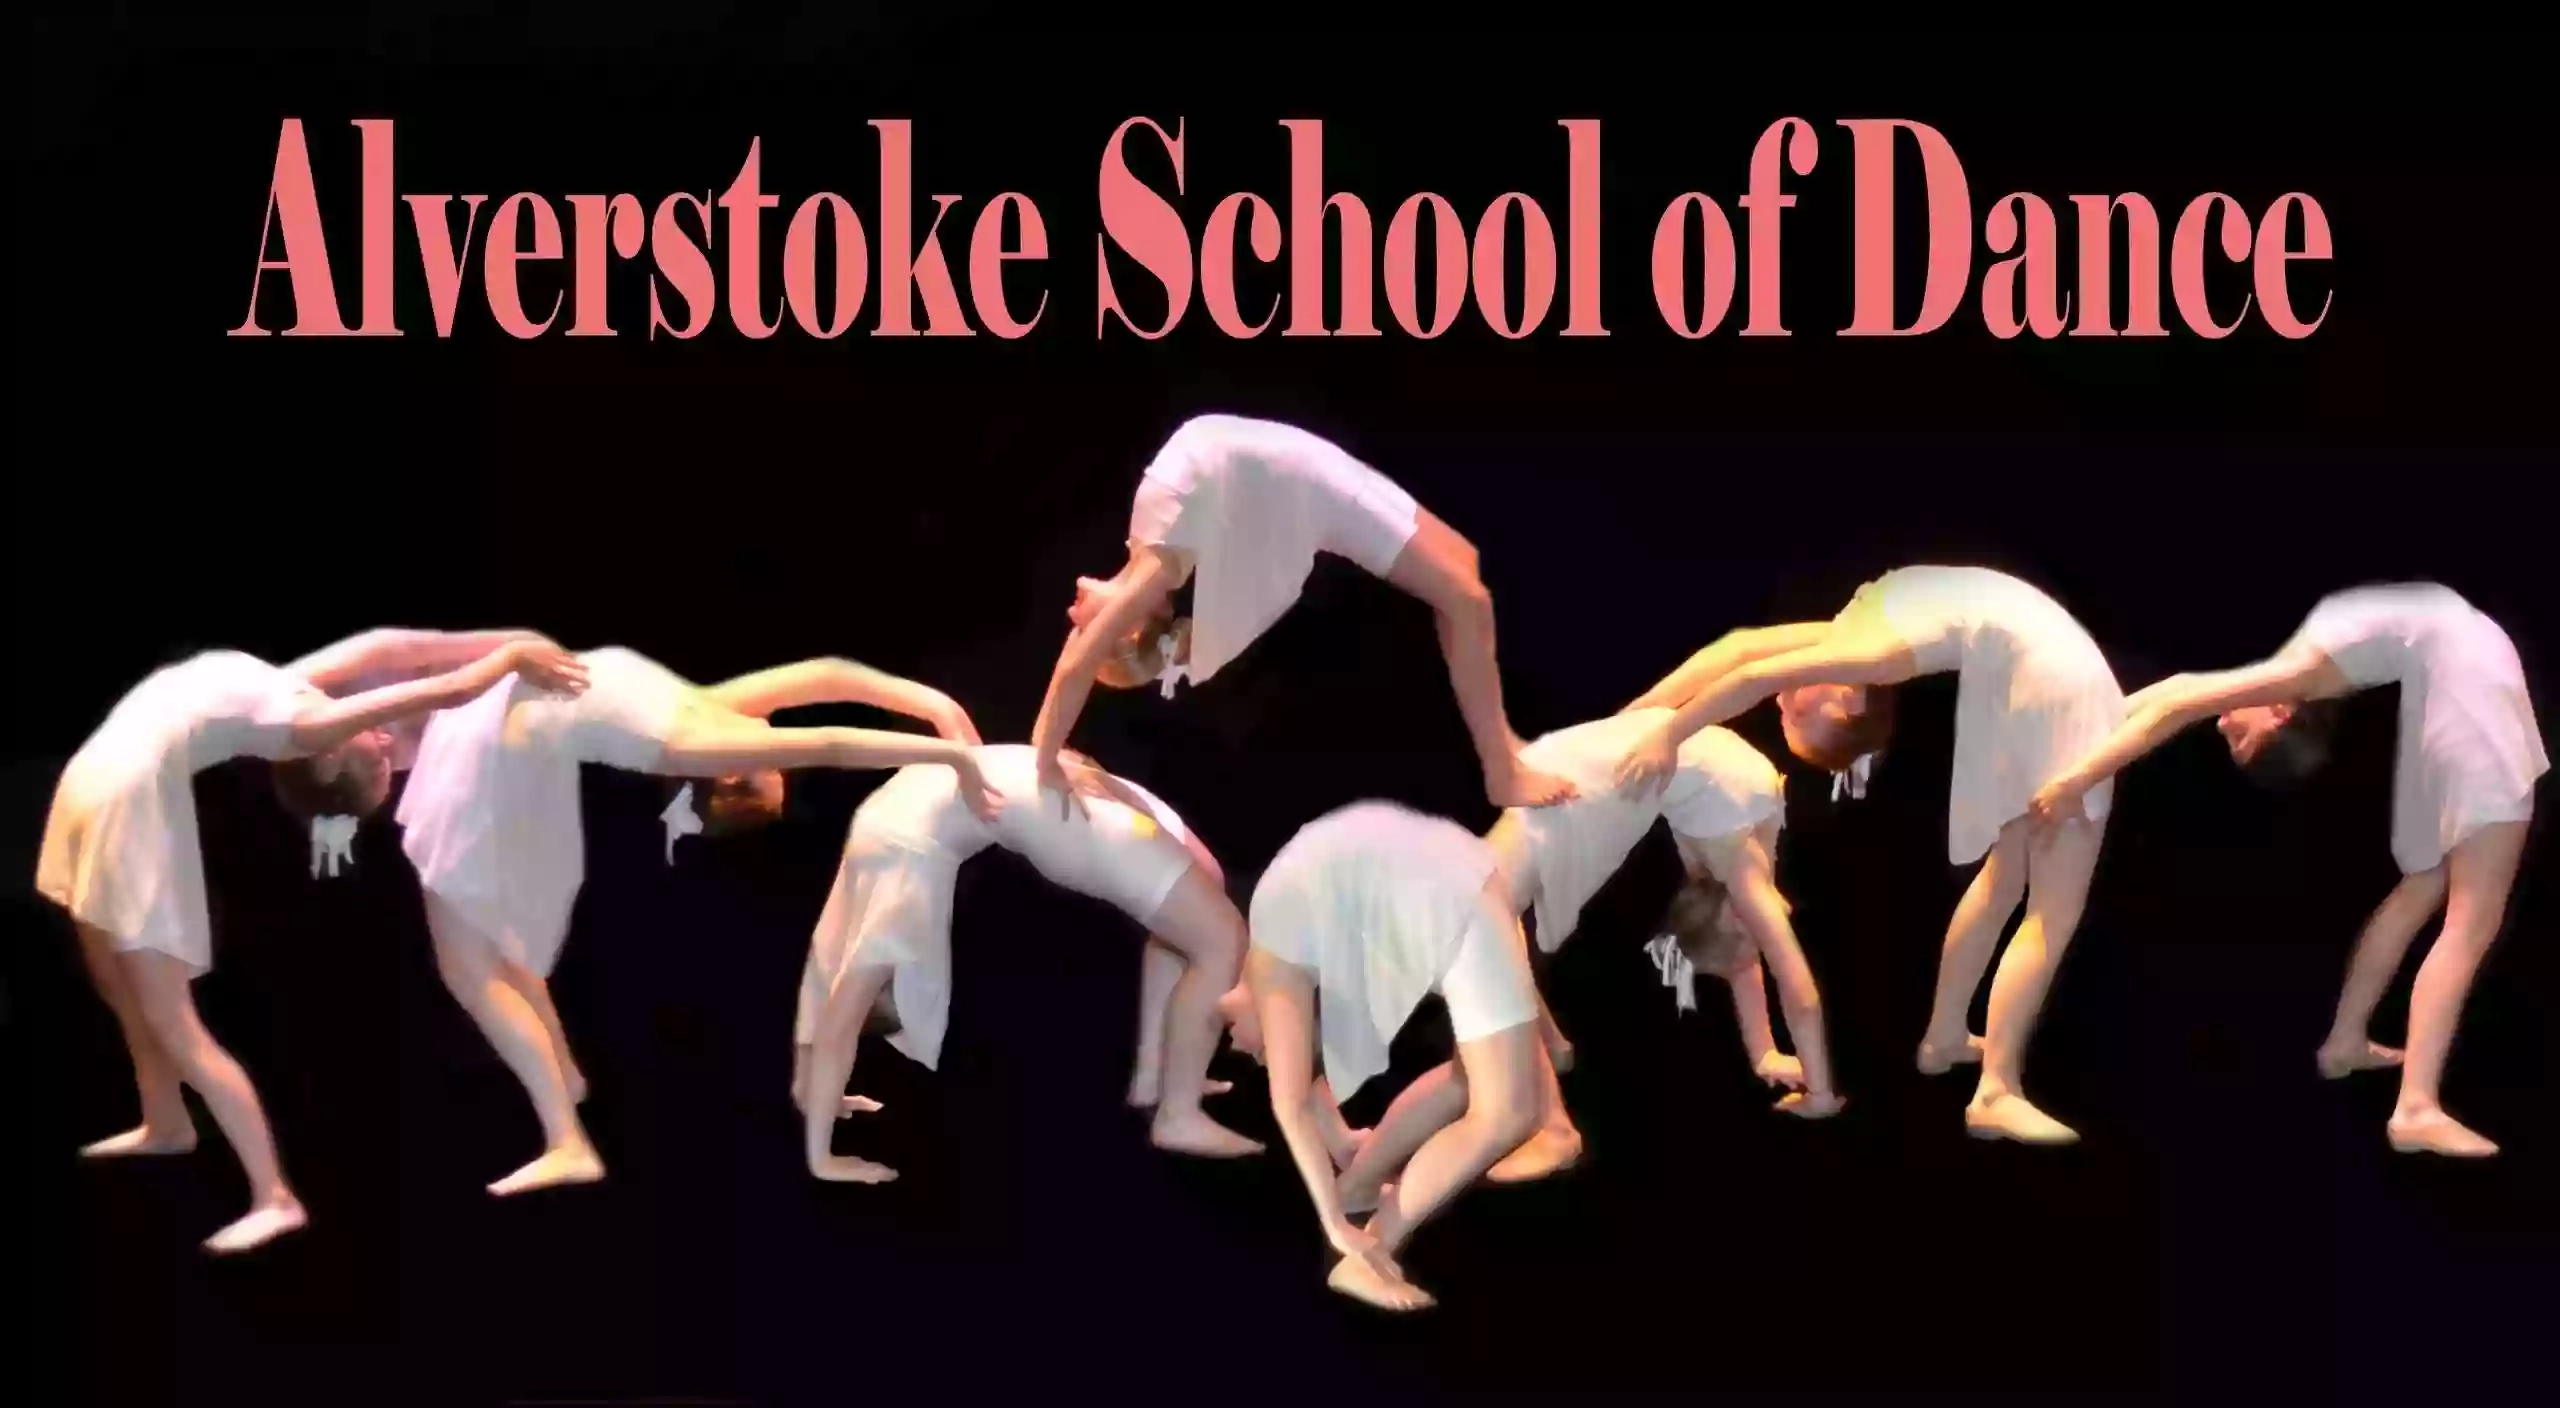 Alverstoke School of Dance